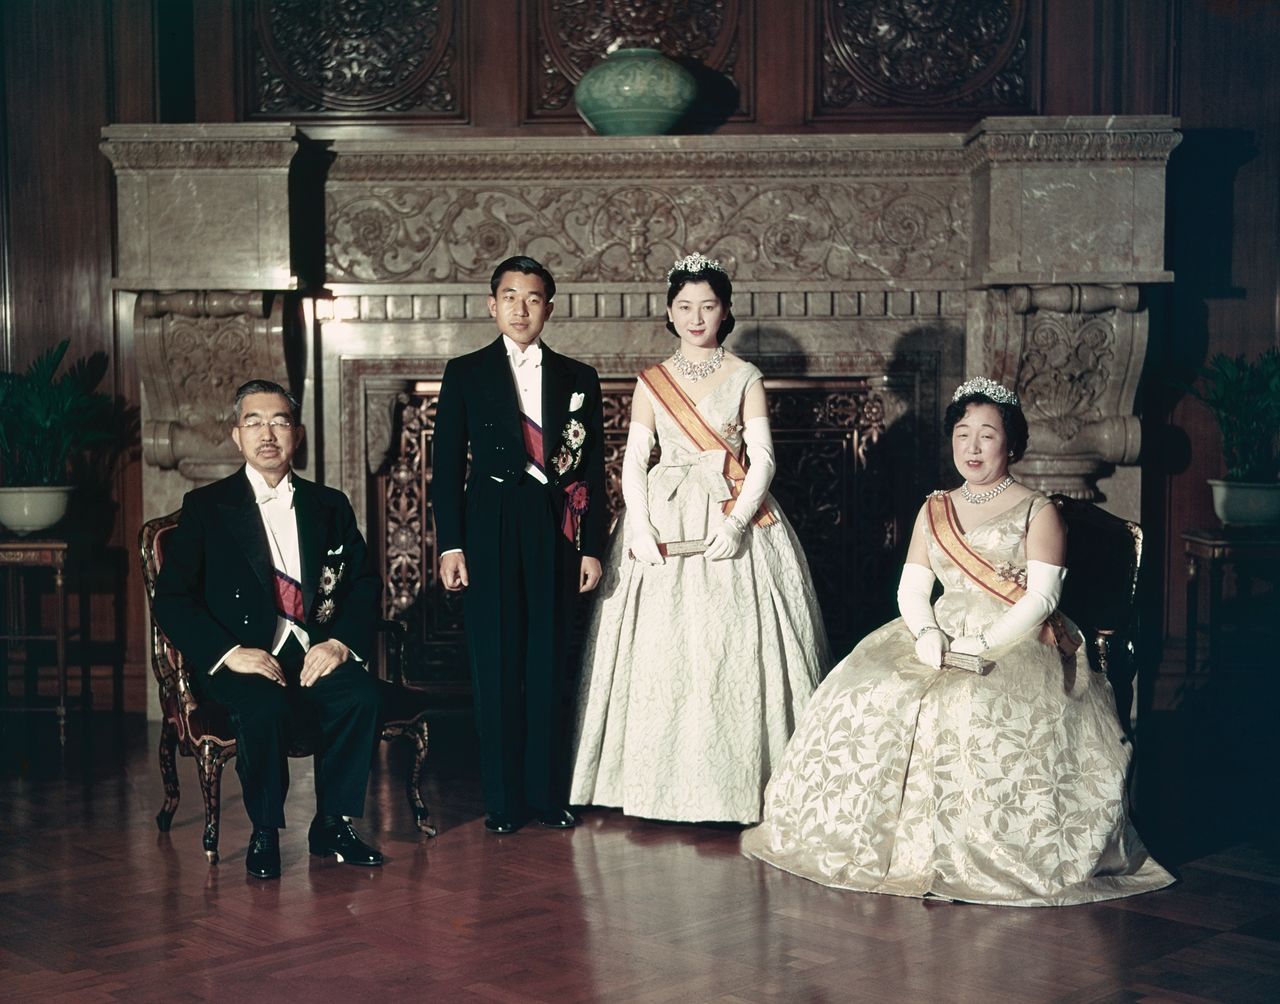 Los entonces príncipes herederos Akihito y Michiko (de pie) con el emperador Hirohito y la emperatriz Nagako tras la ceremonia Chōken no Gi el 10 de abril de 1959 en el Palacio Imperial.